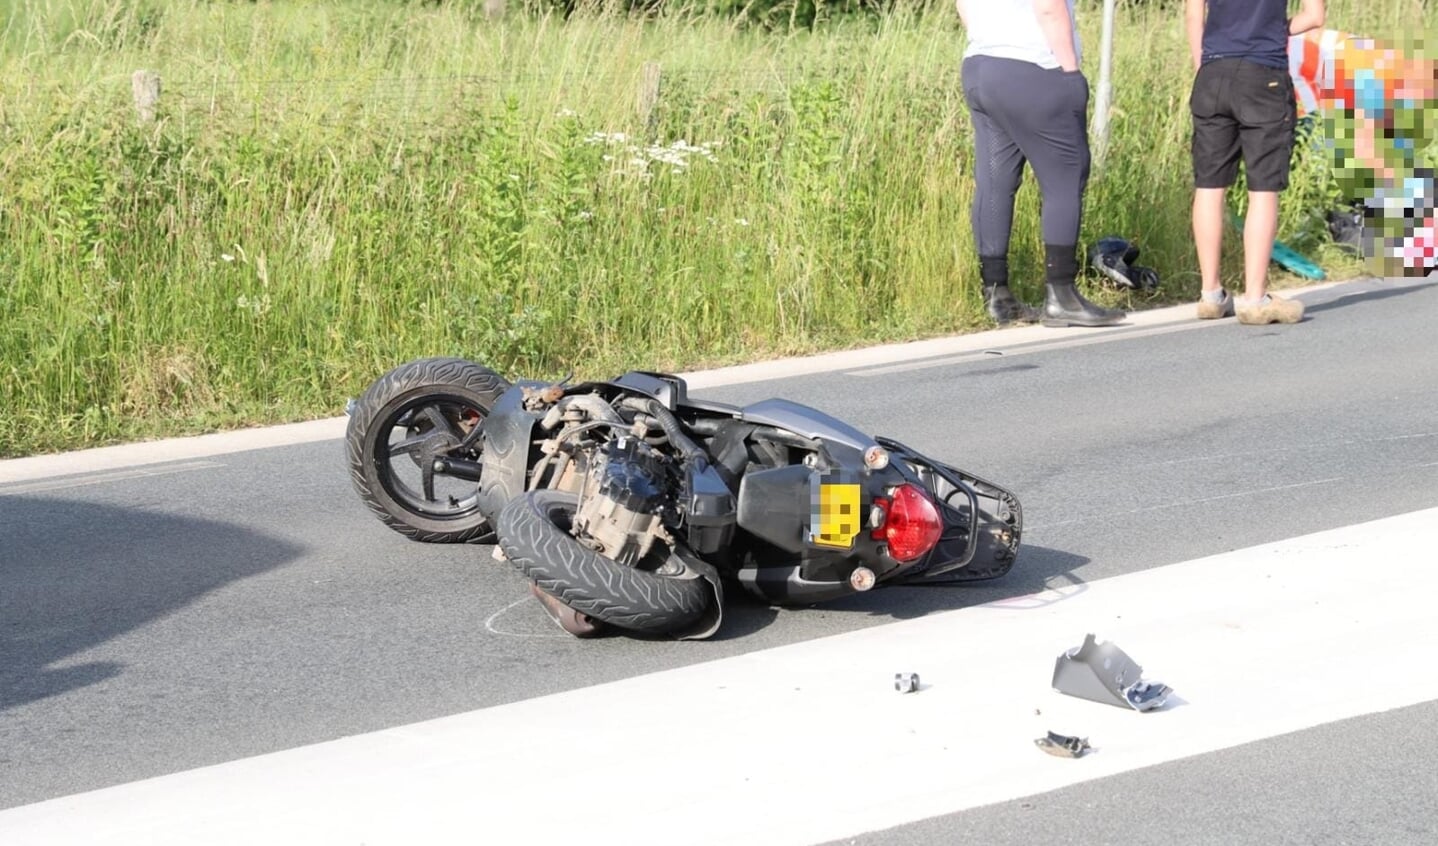 De scooter werd vrijdagavond geschept door een auto en liep flinke schade op.